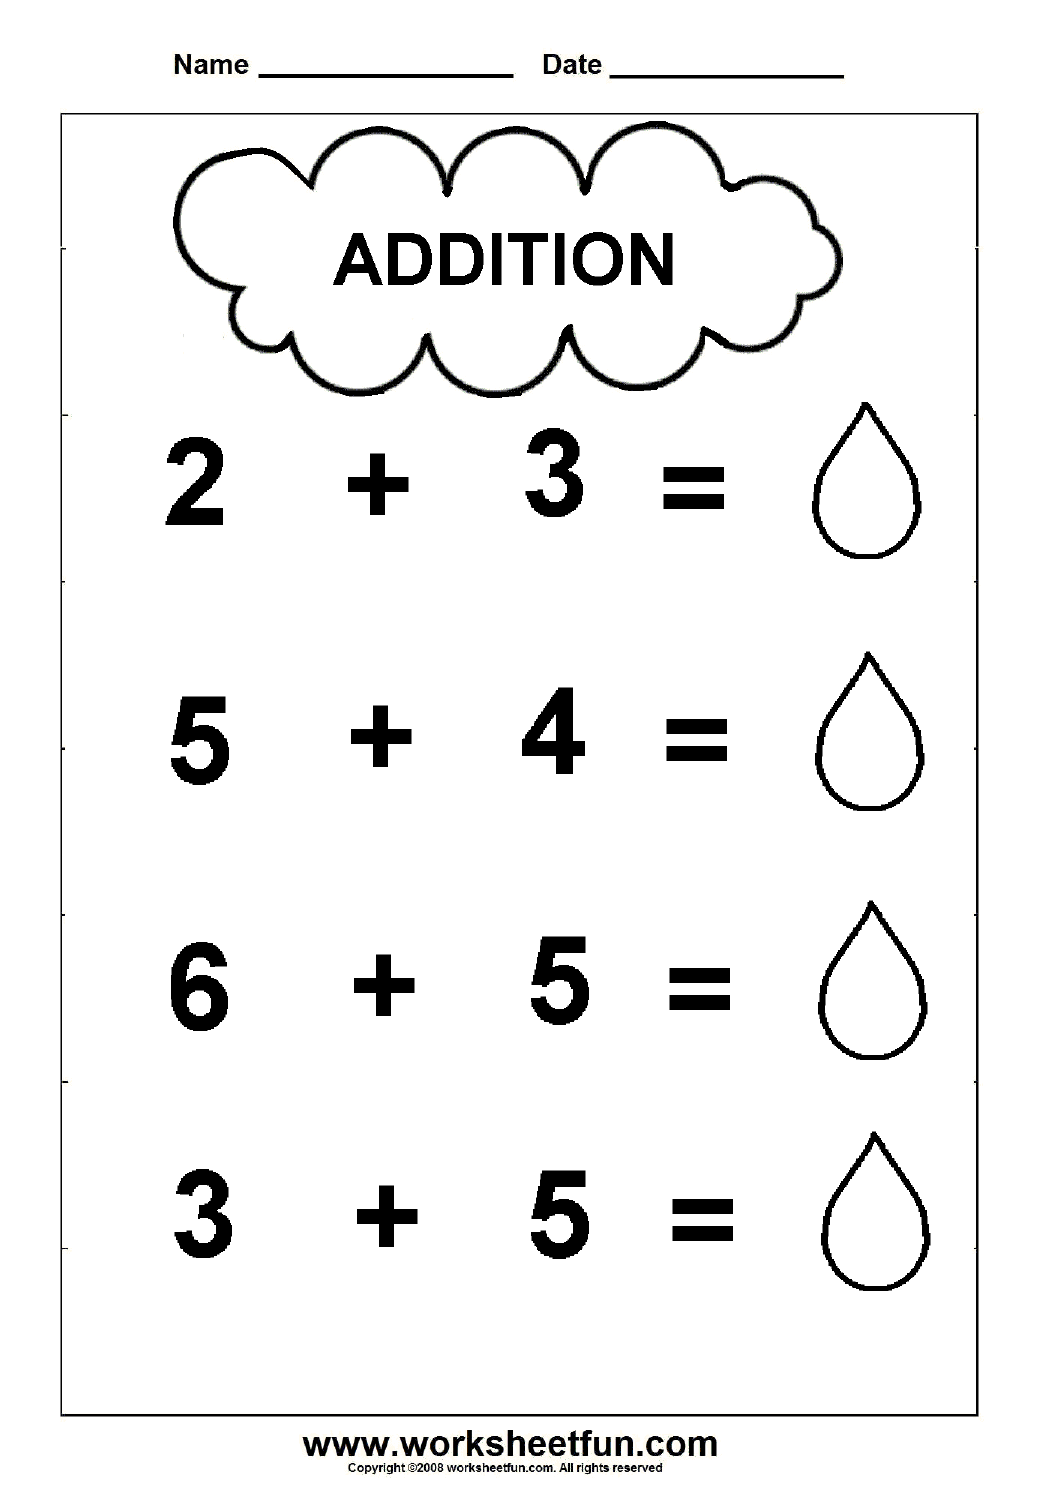 addition for kindergarten worksheets